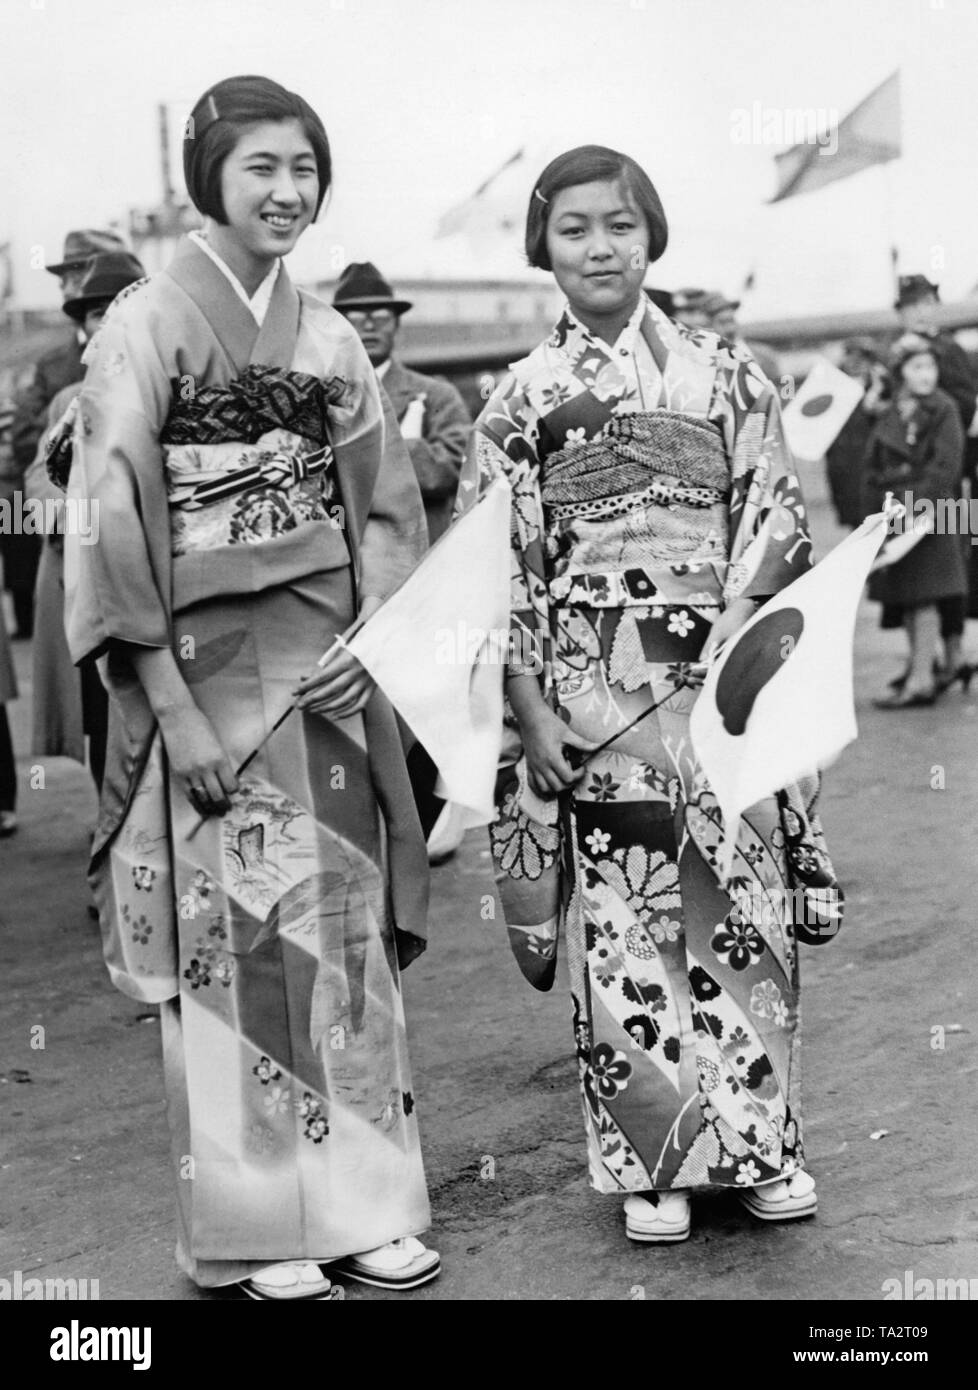 Kimono fashion Black and White Stock Photos & Images - Alamy